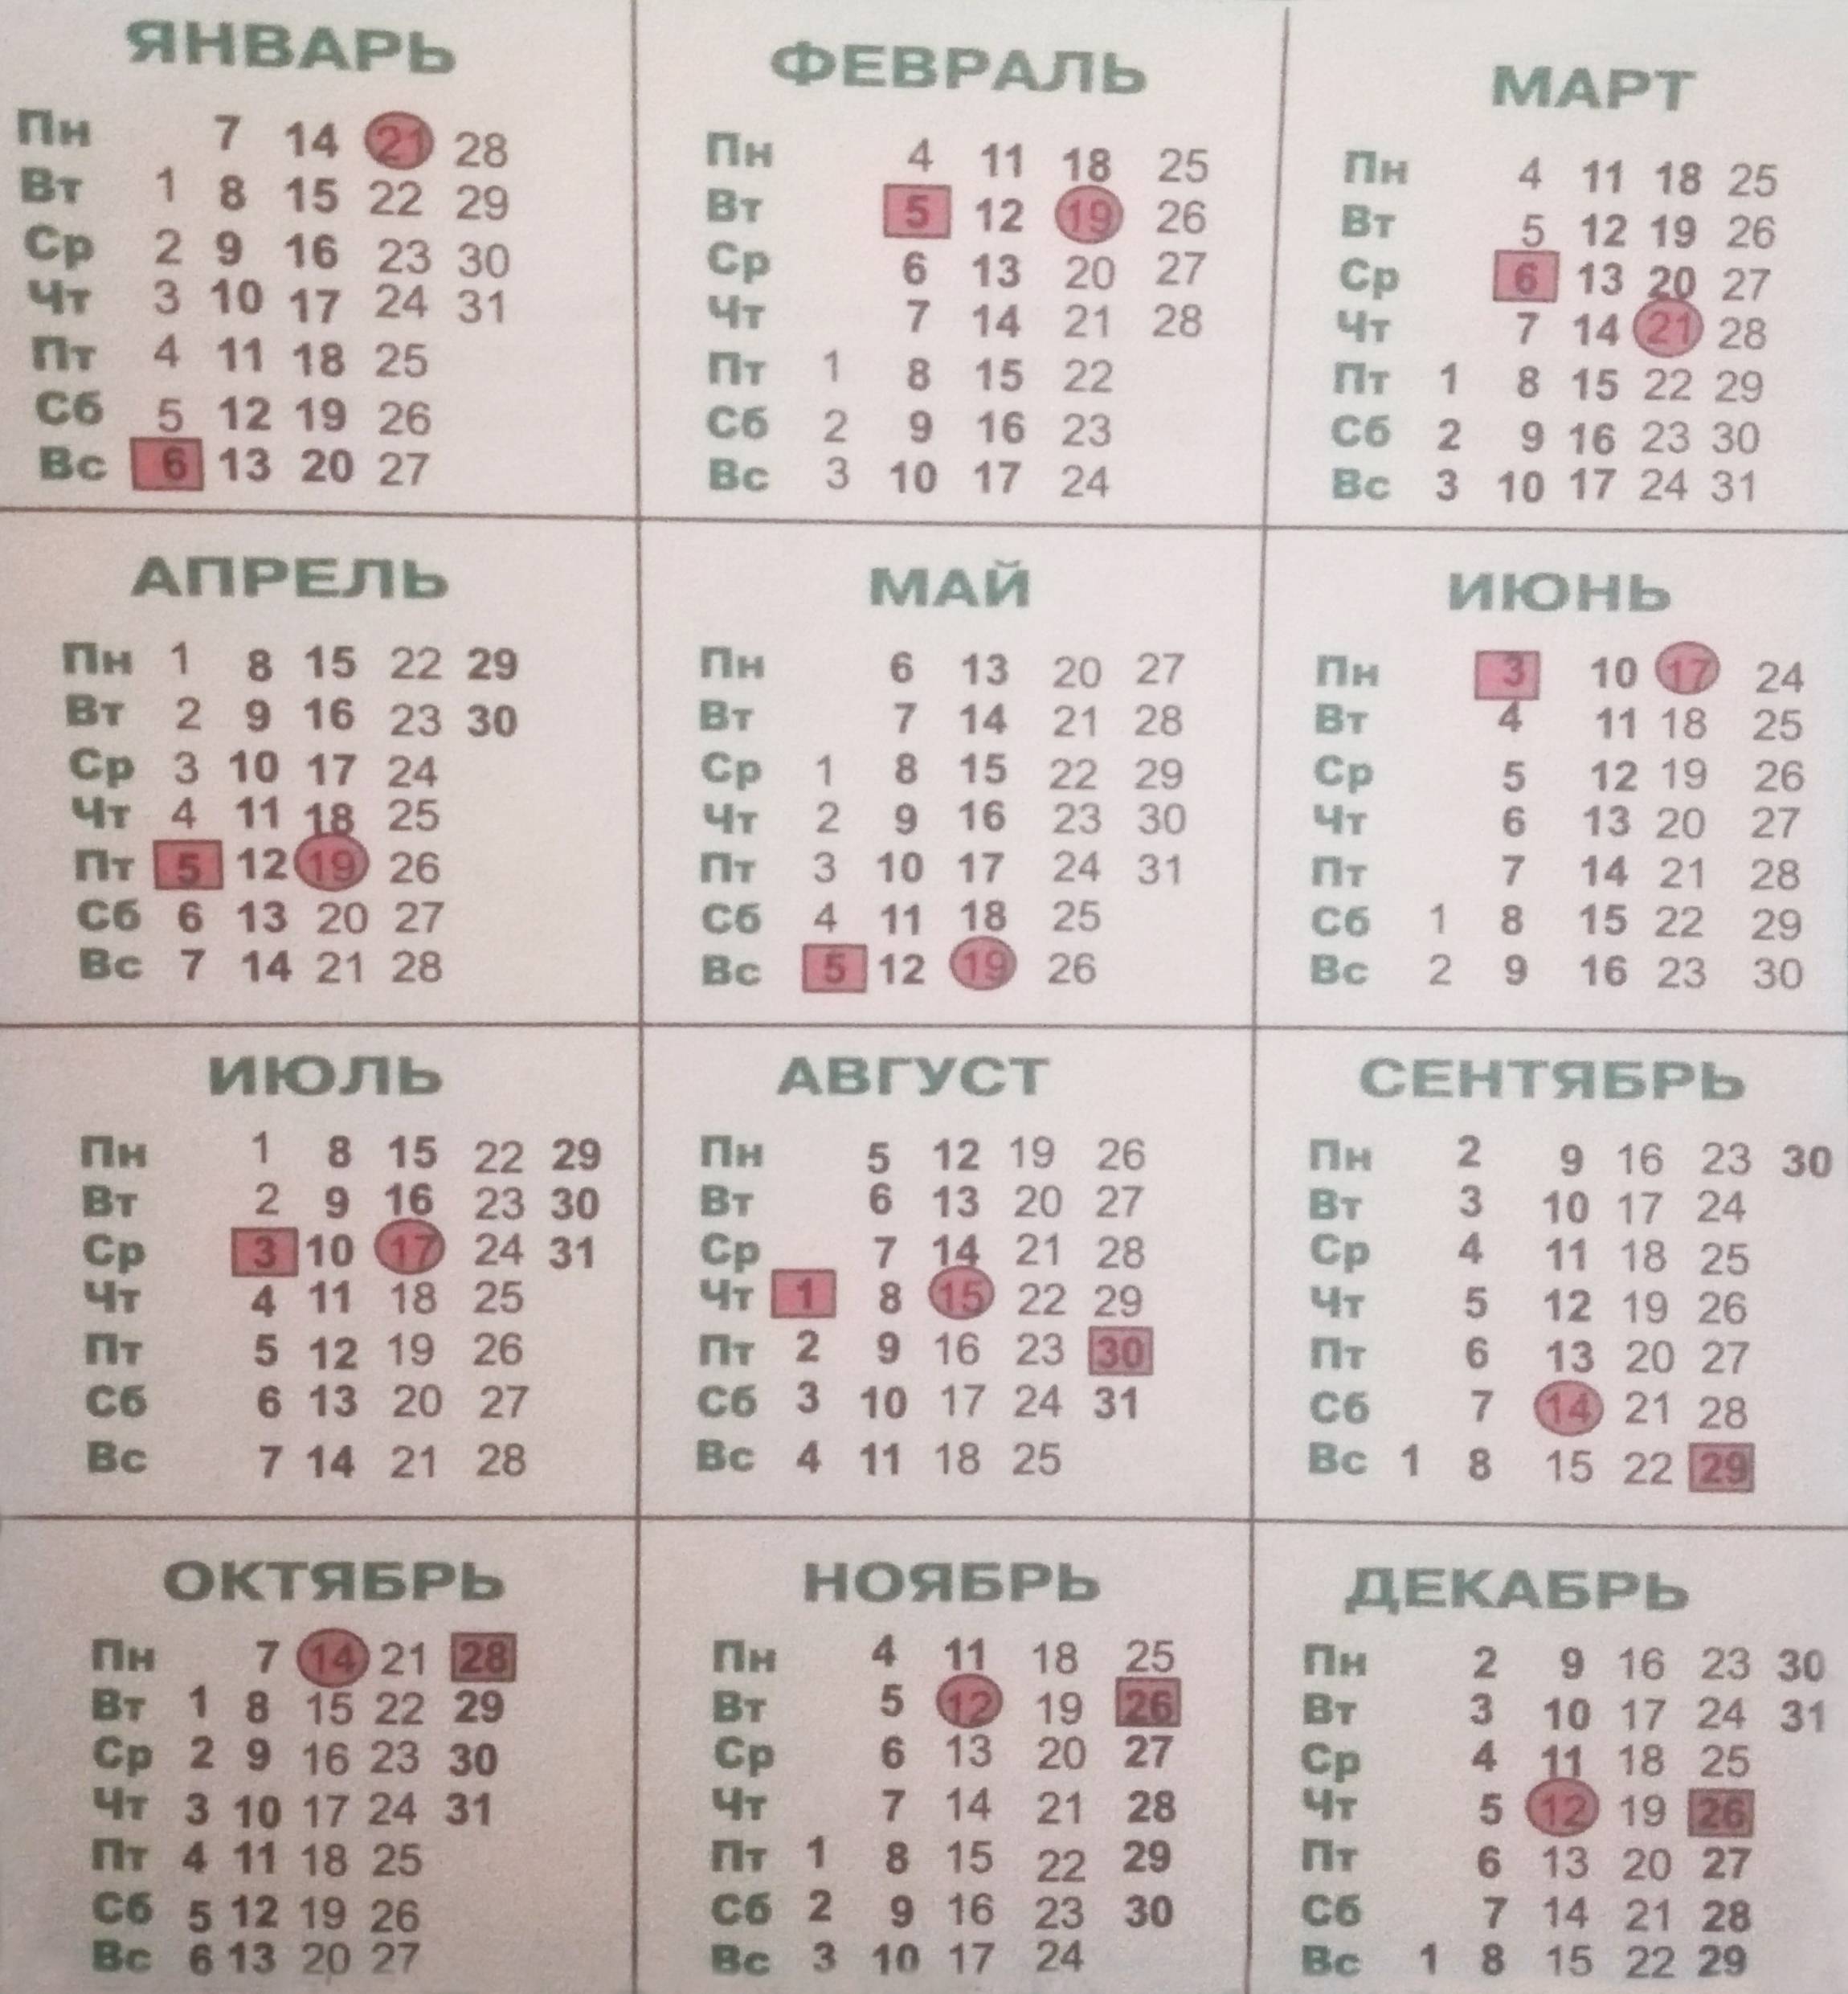 Лунный посадочный календарь на июнь 2020 г.